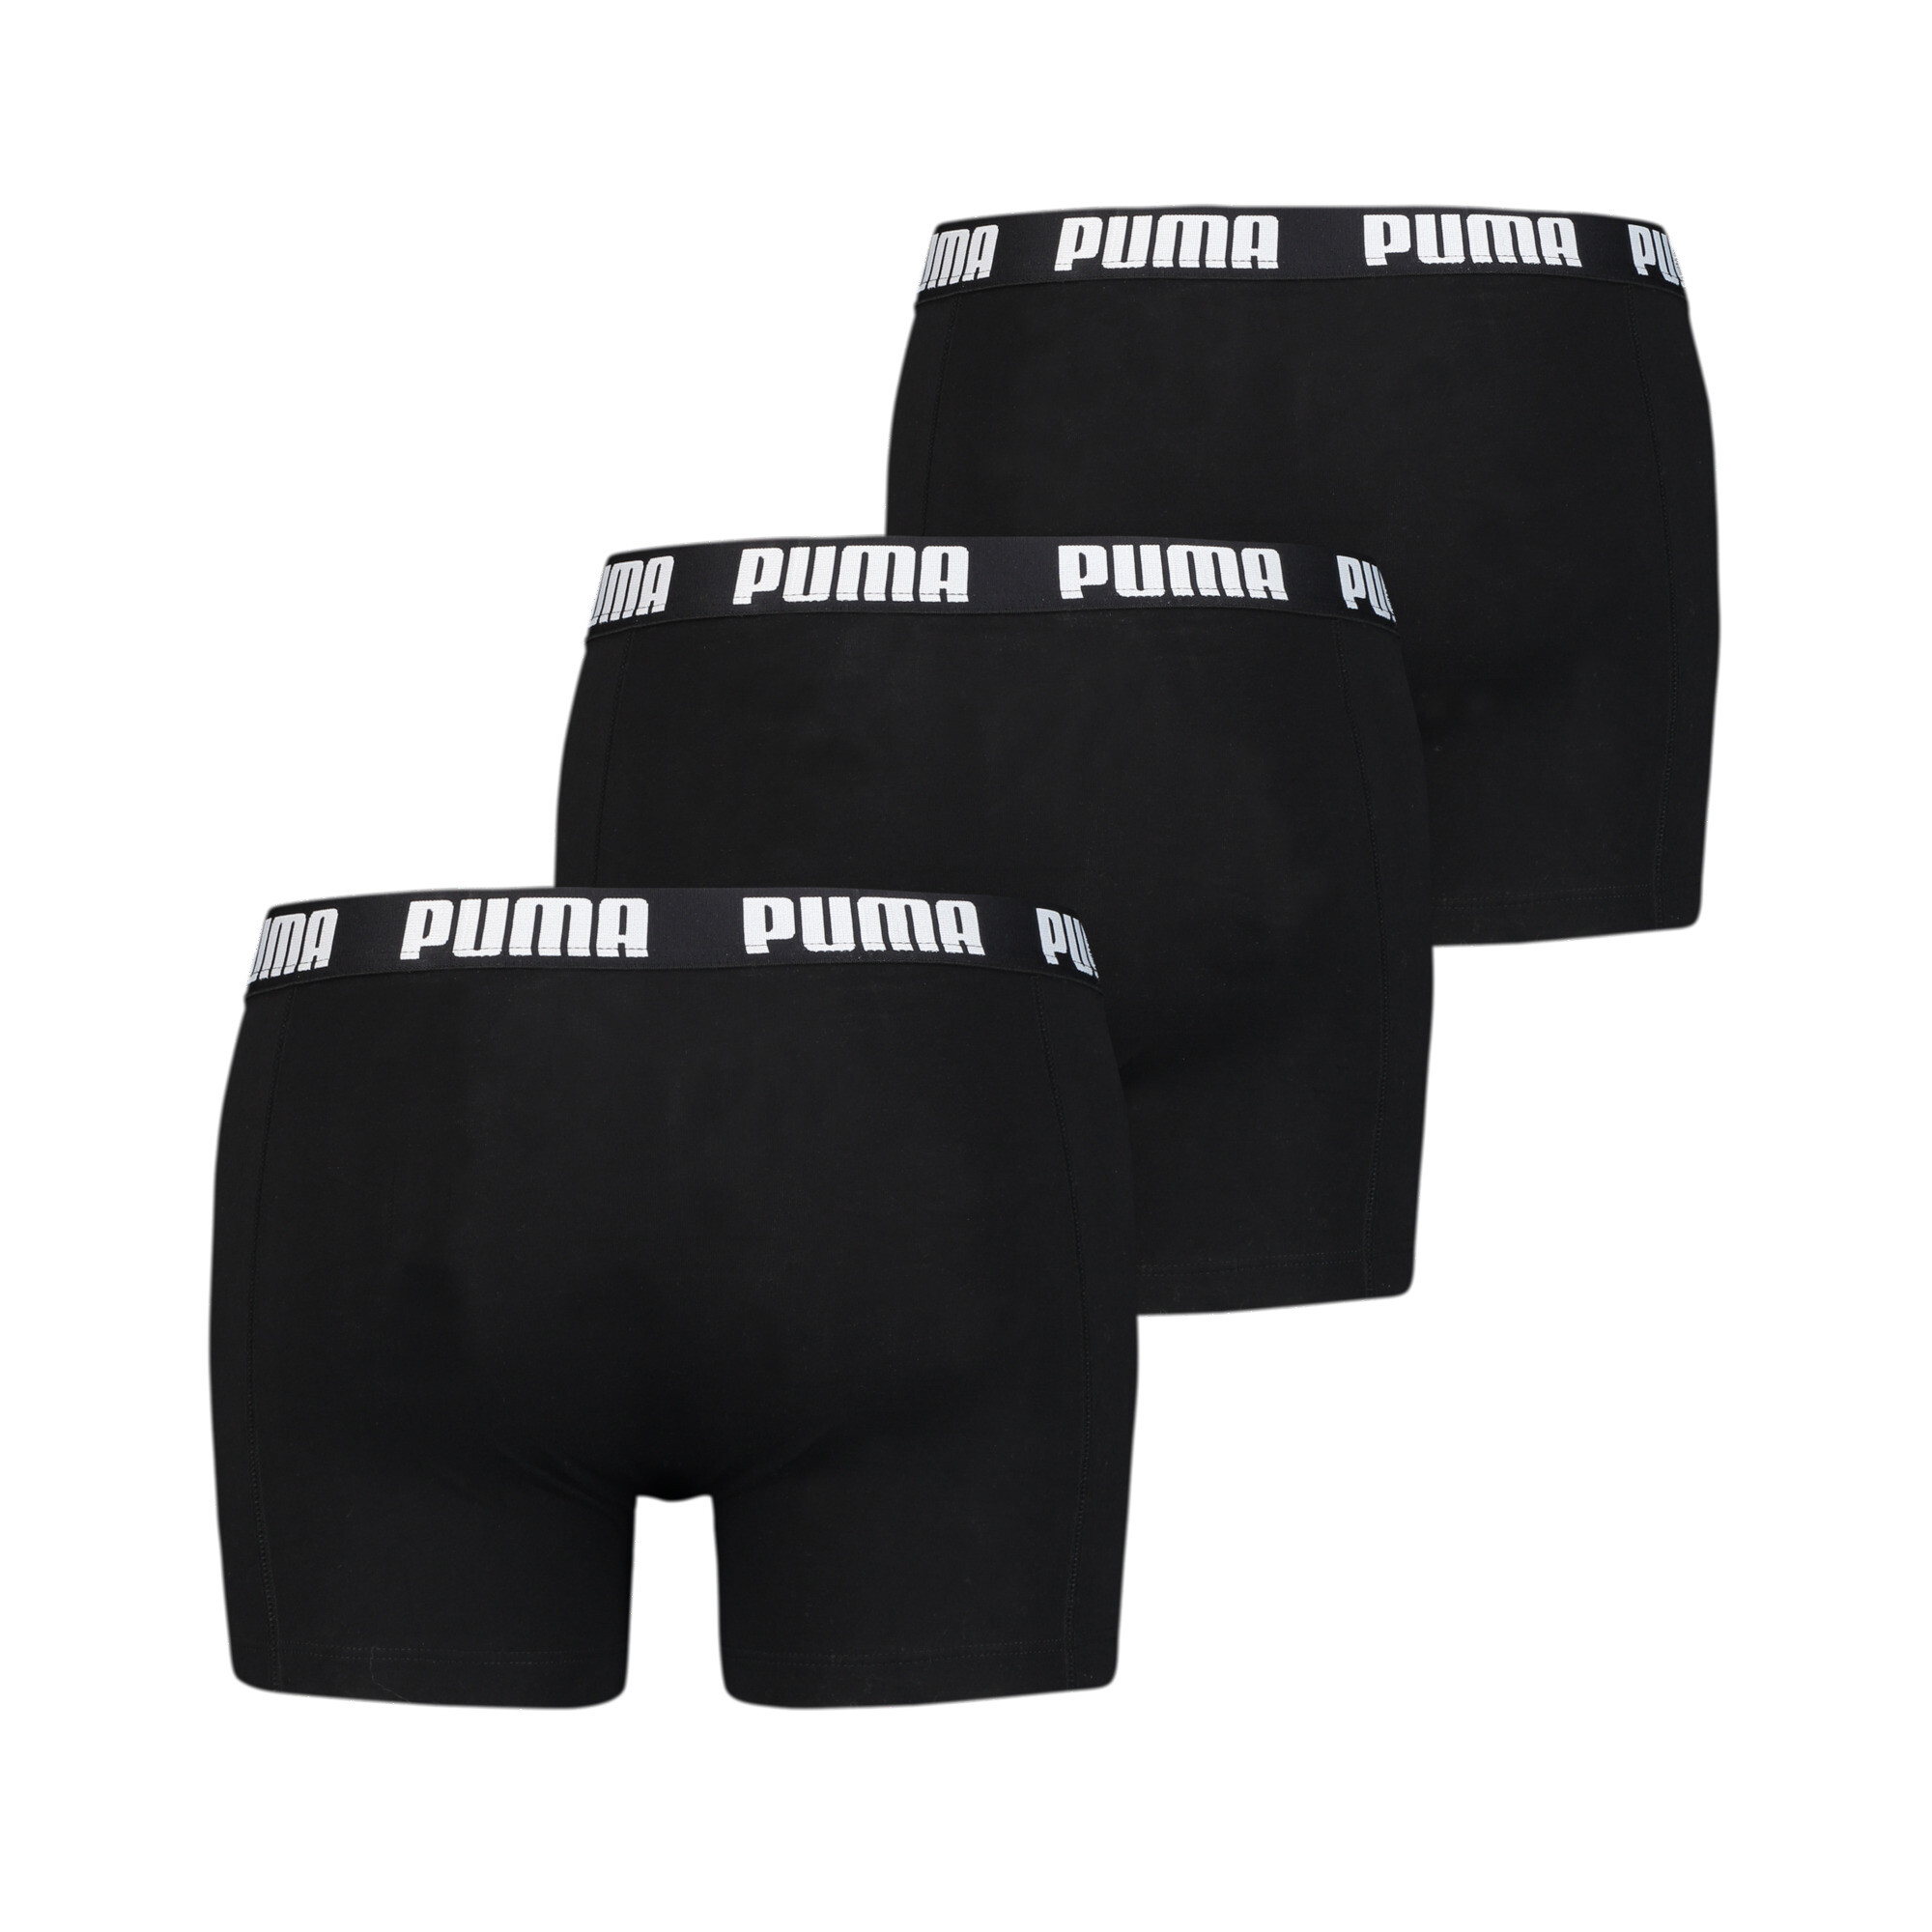 Men's PUMA Everyday Boxers 3 Pack In Black, Size Medium